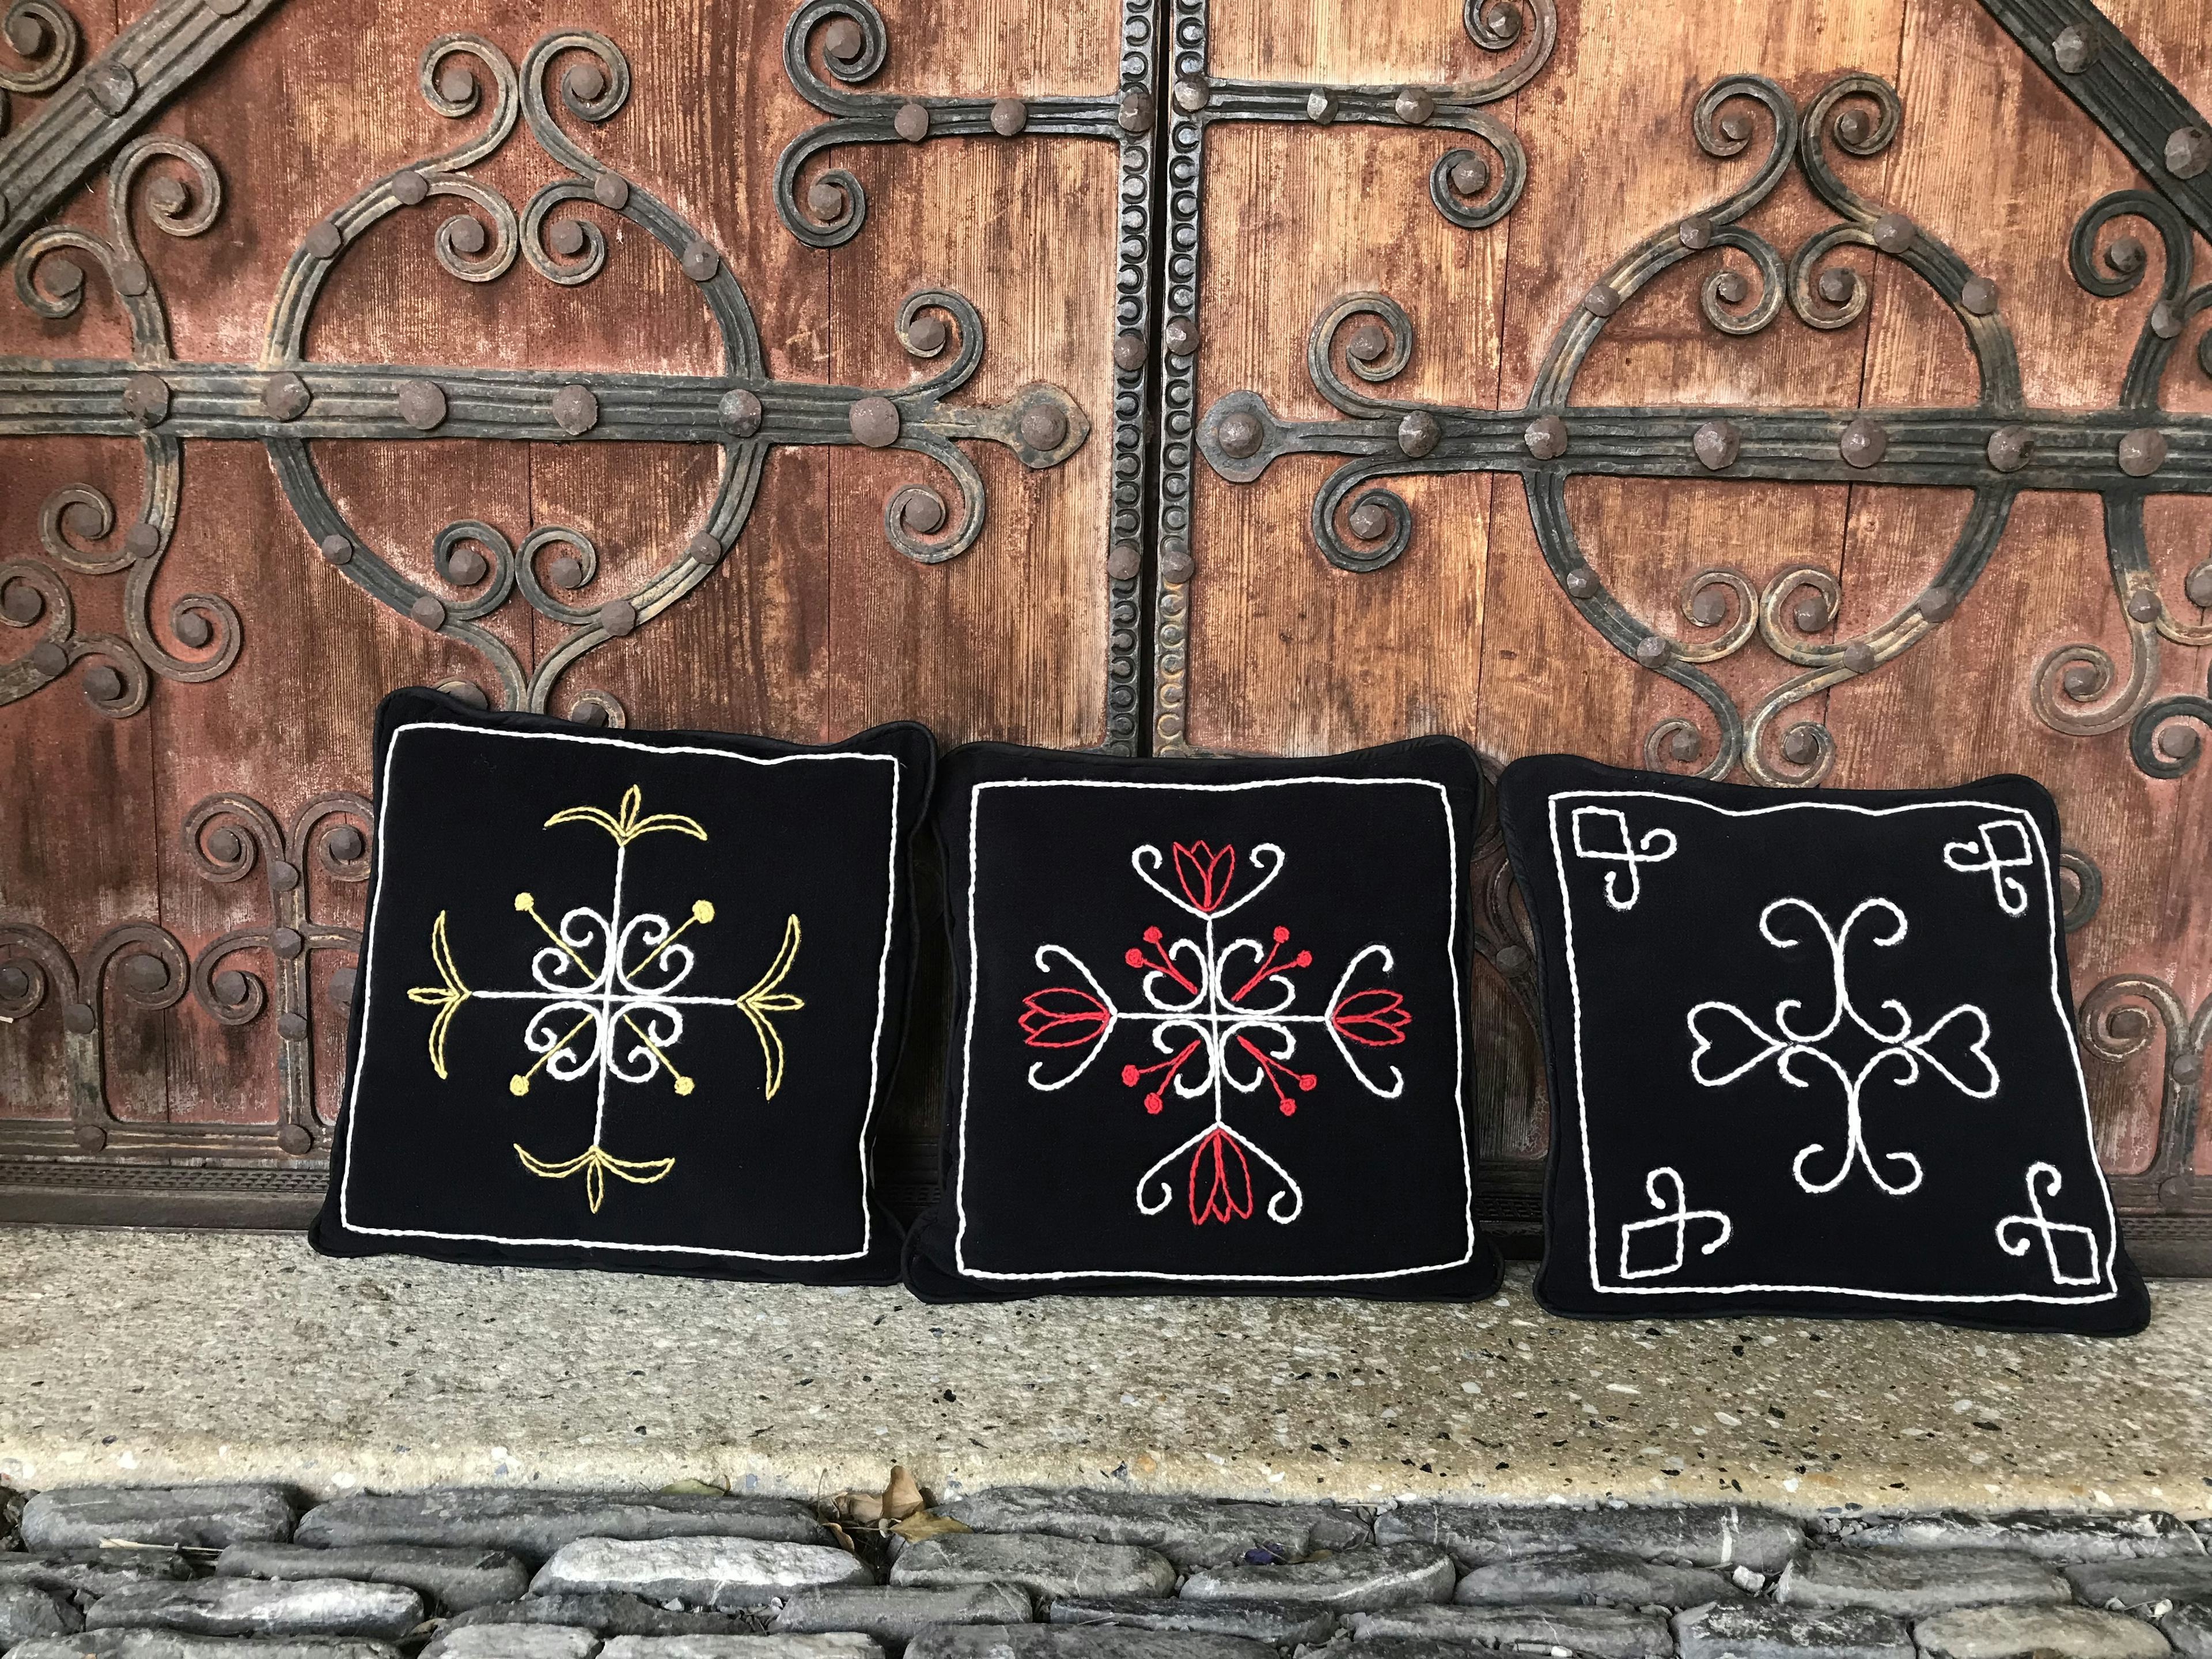 Coussins décoratifs , produit artisanal en vente directe en Suisse